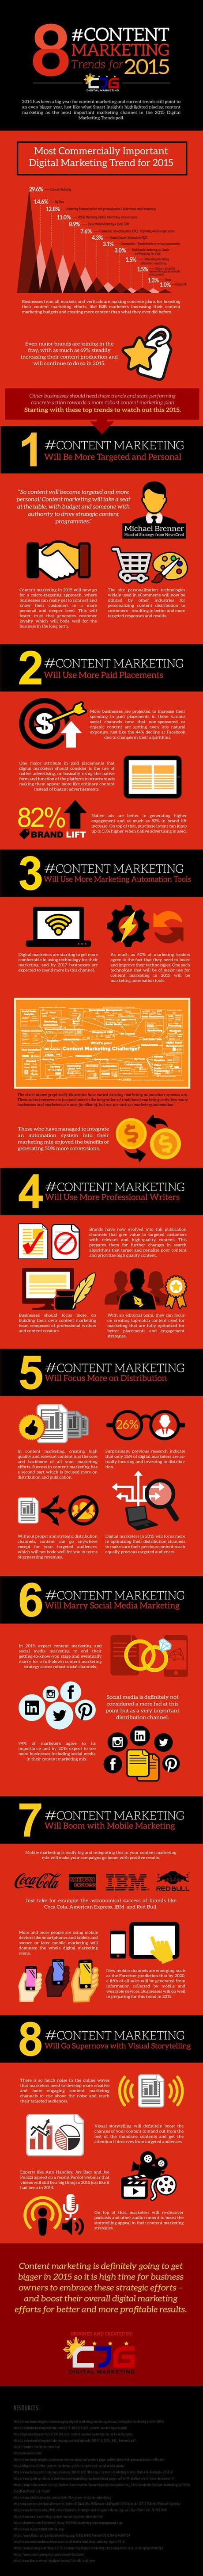 Gli 8 Trends del Content Marketing 2015